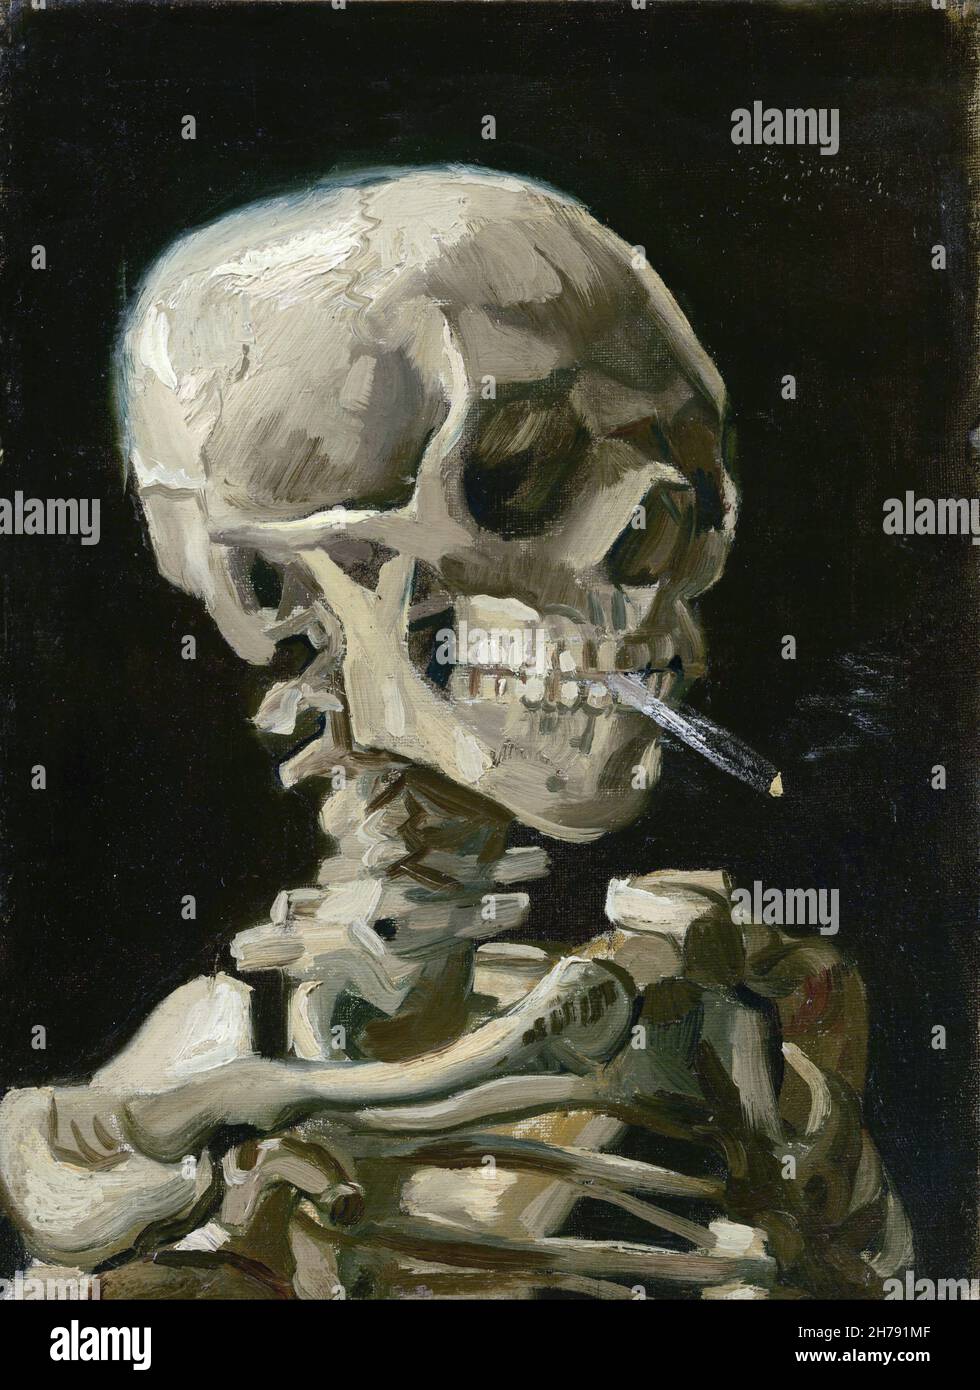 Vincent van Gogh : crâne d'un squelette avec une cigarette allumée, 1886 Banque D'Images